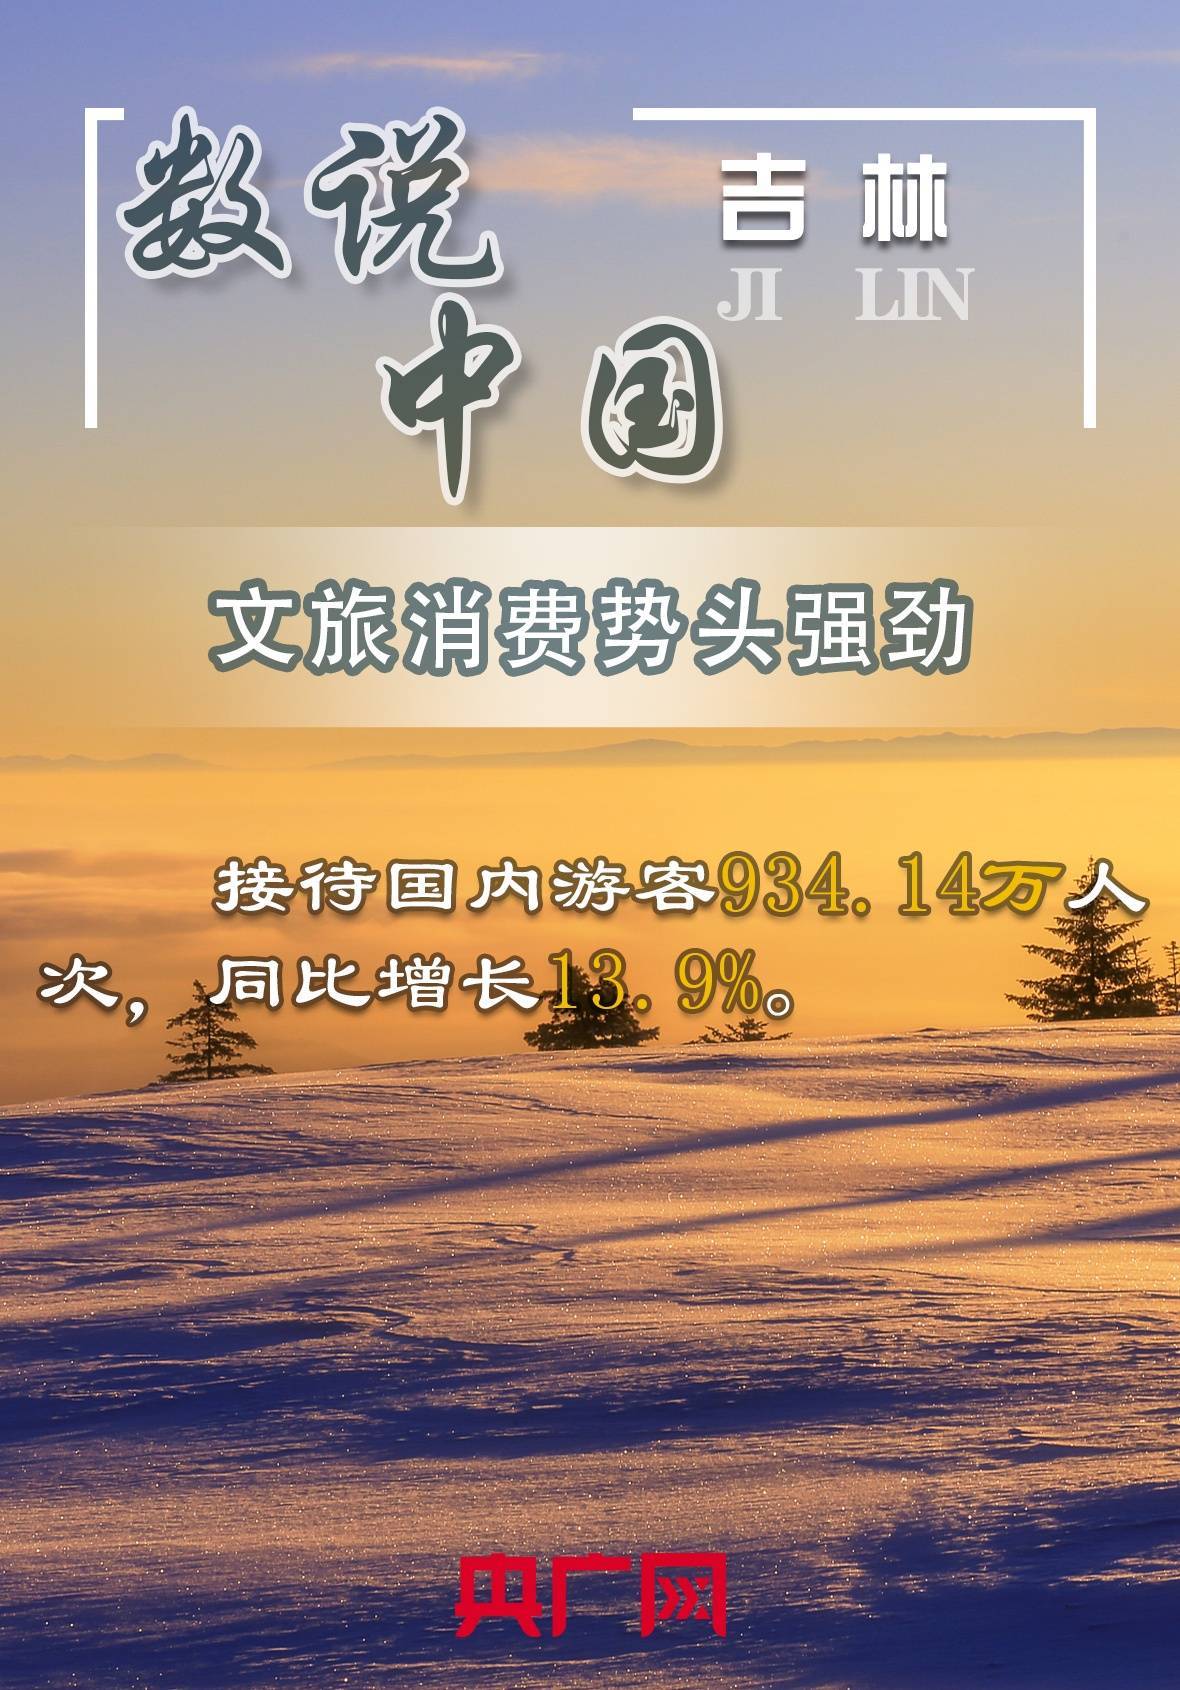 杨海|【数说中国·吉林】”冬奥+新春“成春节旅游热门